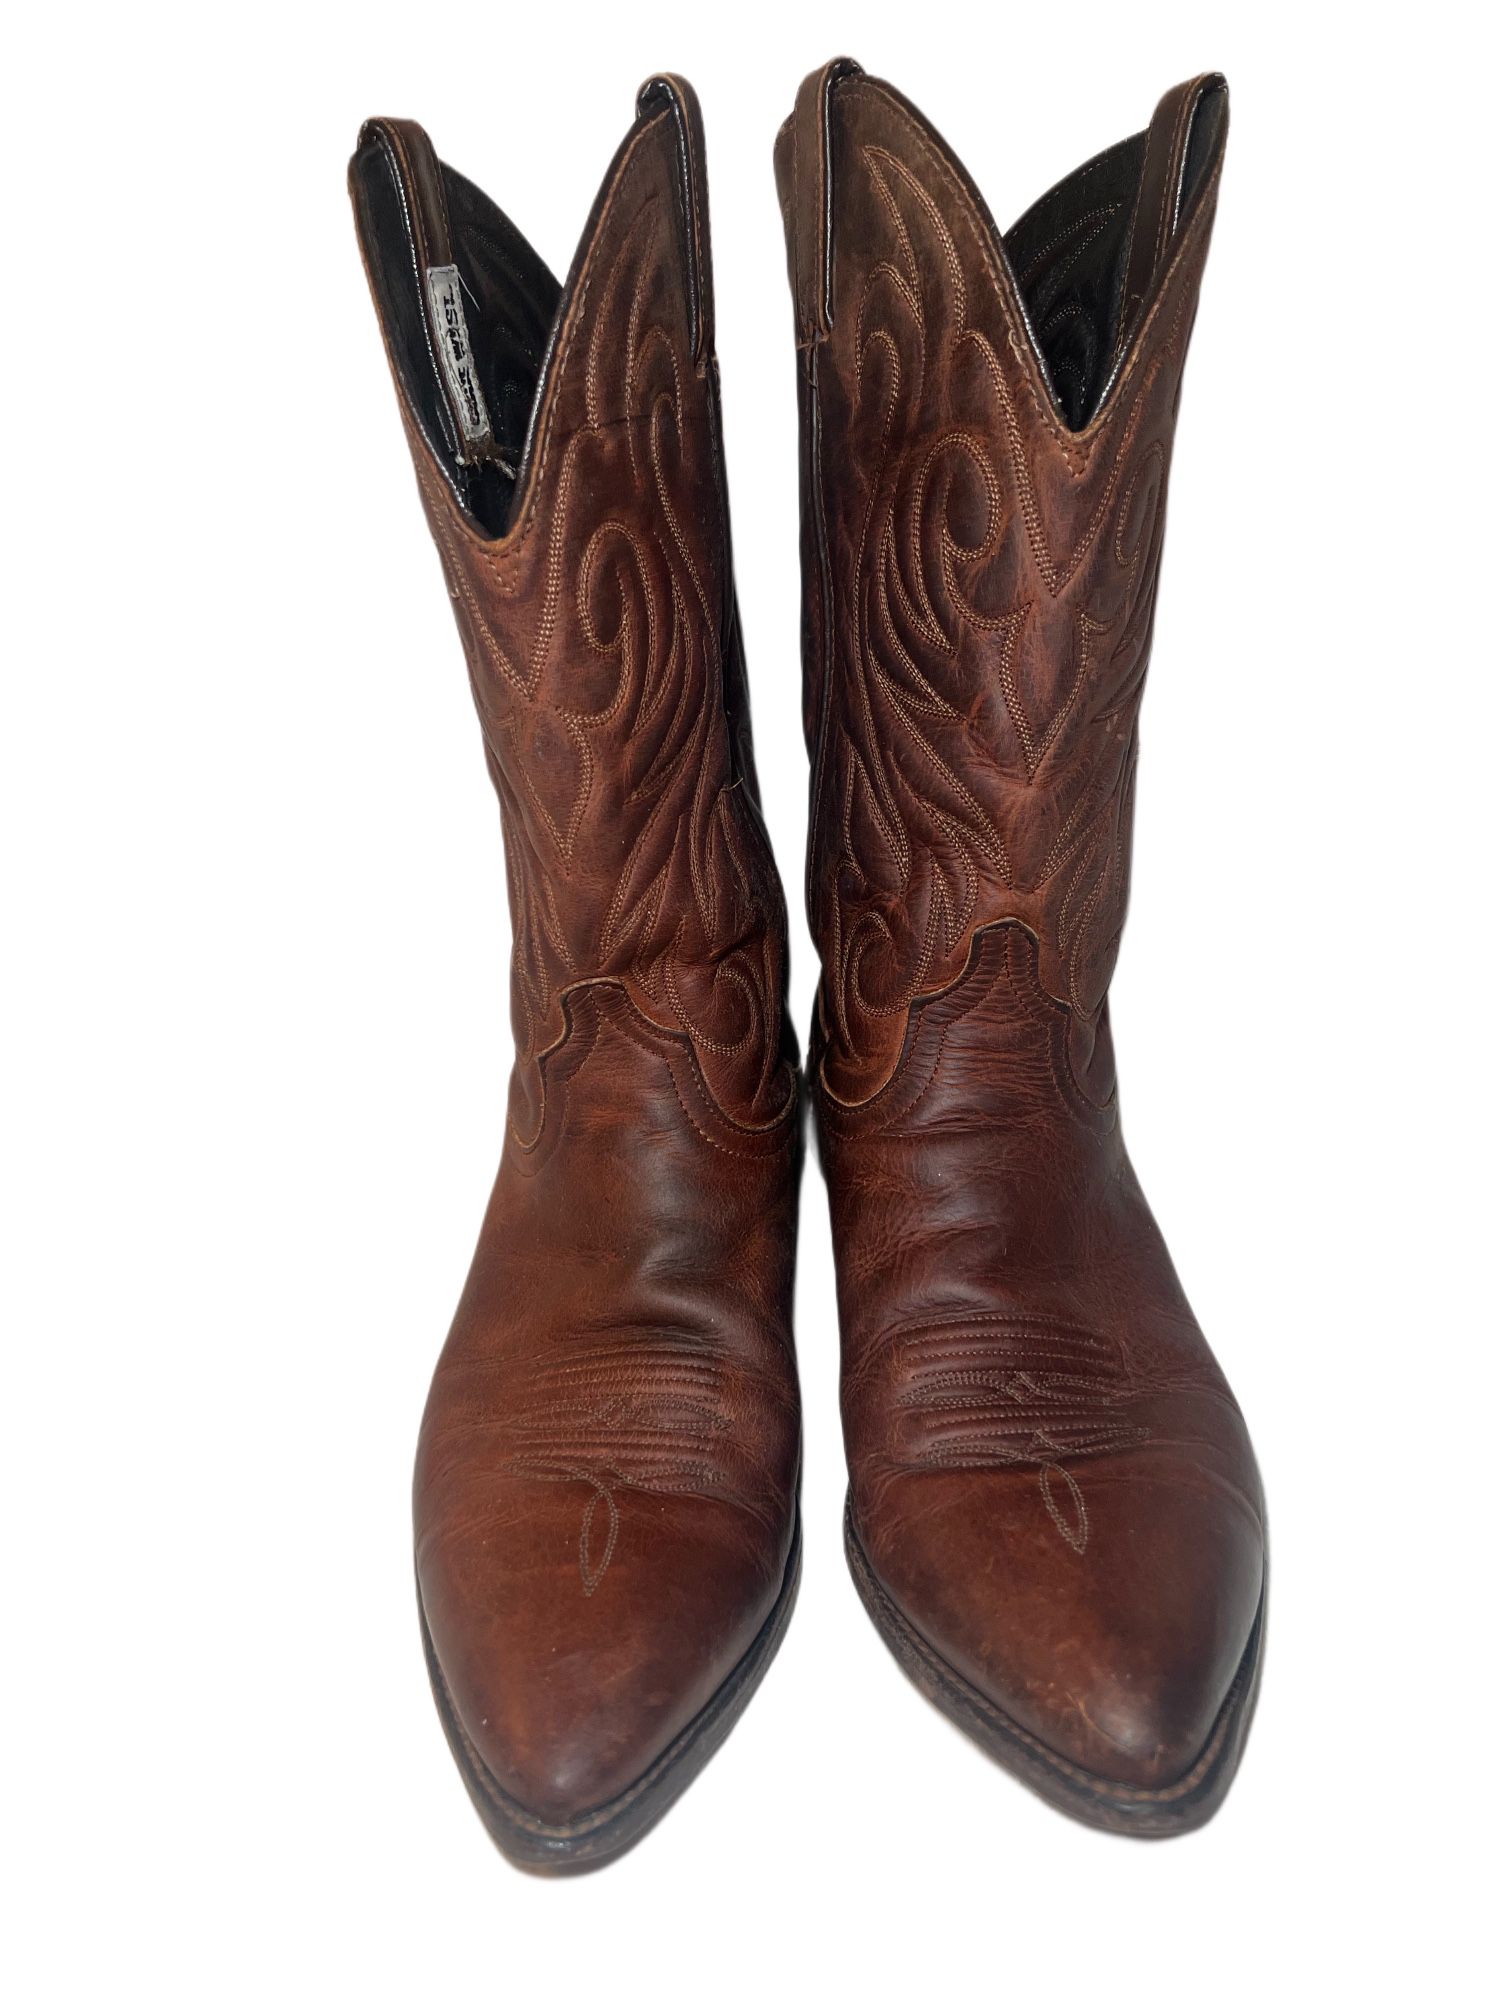 Vintage  Boots  - Size US 10.5 Women’s, 9 Men’s 